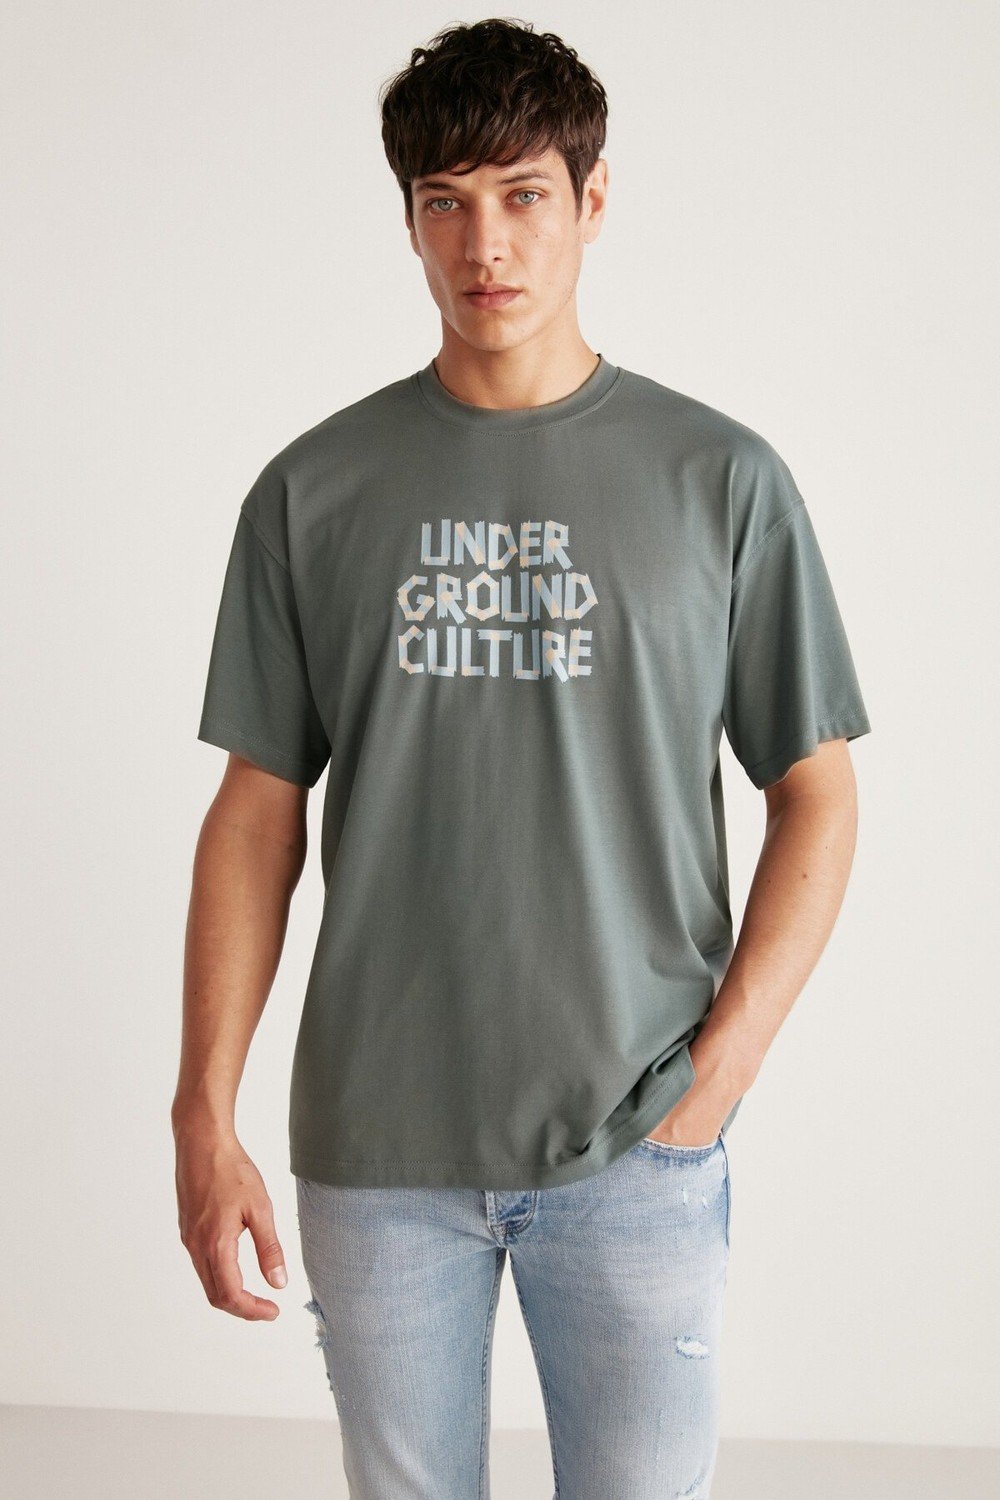 GRIMELANGE T-Shirt - Green - Regular fit